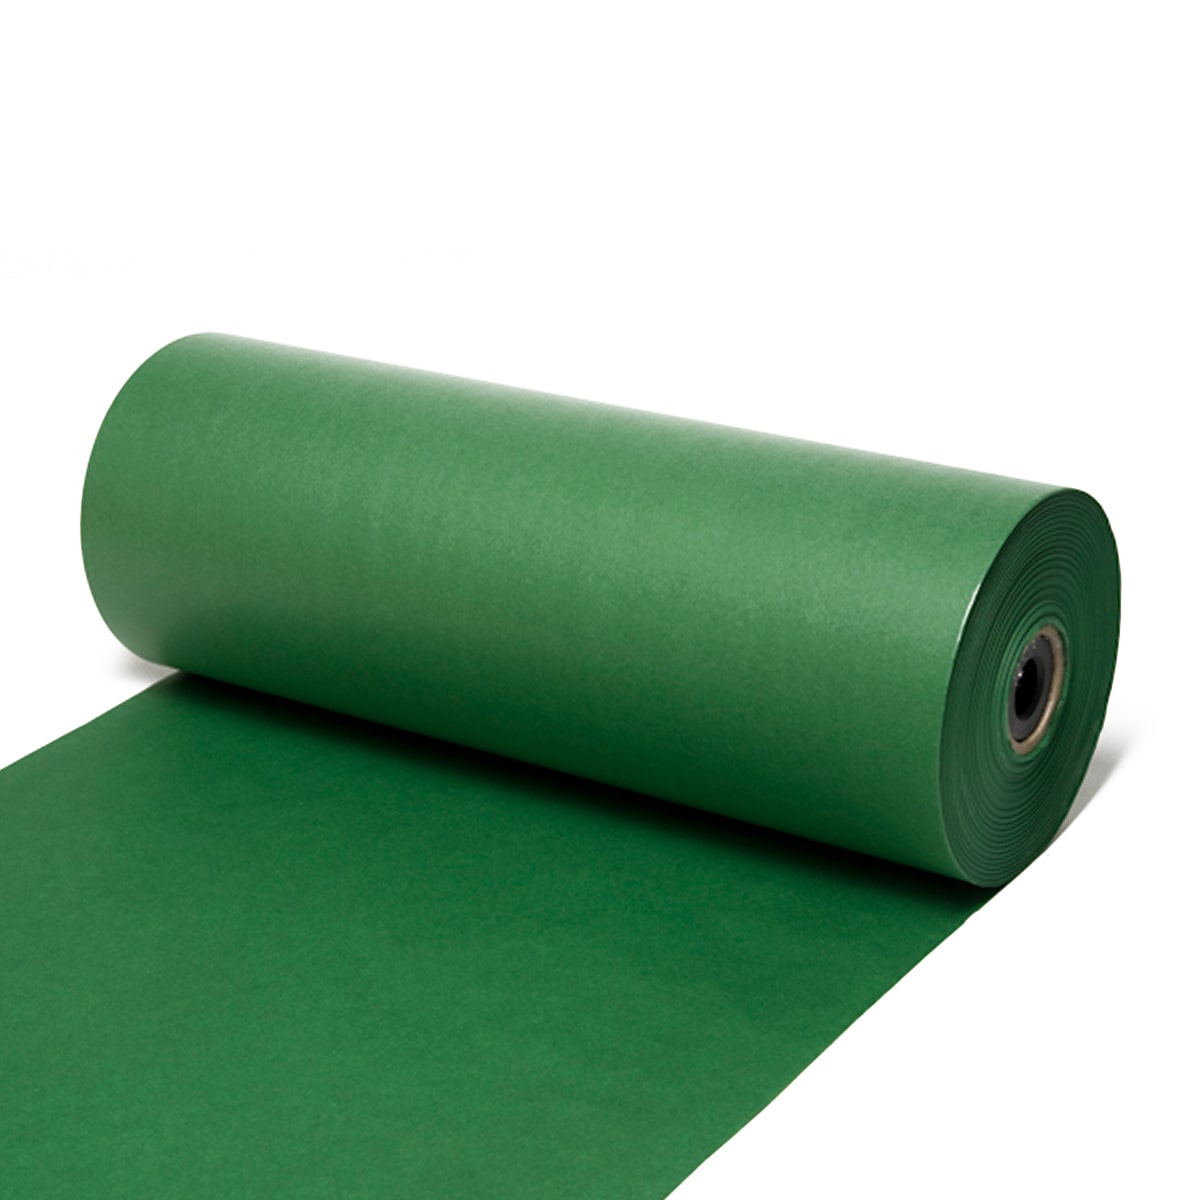 Seidenpapier Tannengrün, 50 / 75 cm breit, ca. 500 Meter / Rolle